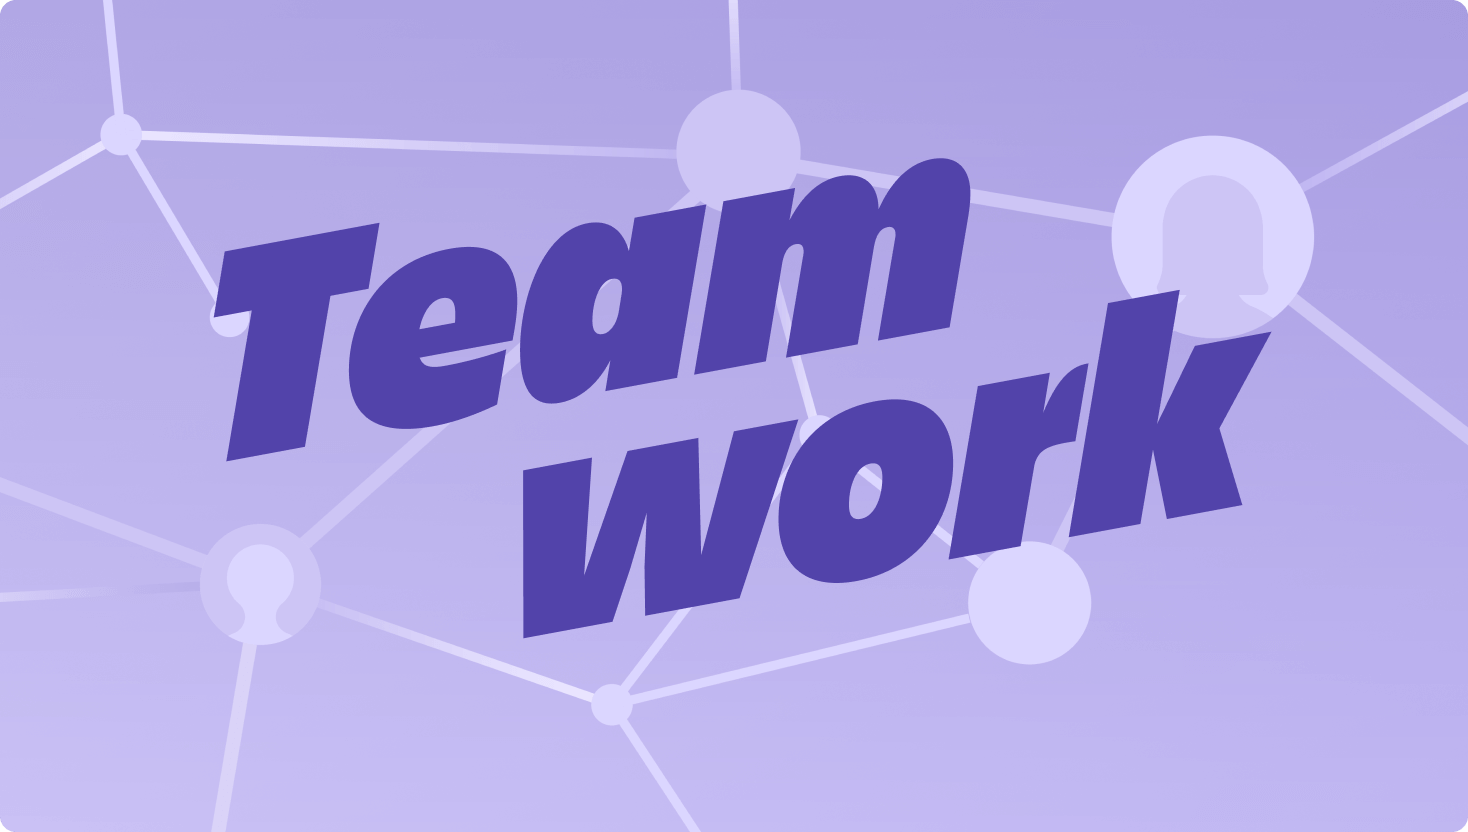 Ein violettes Bild von Verbindungsknoten in einem Netzwerk, auf dem das Wort "Teamwork" an auffälliger Stelle zu sehen ist